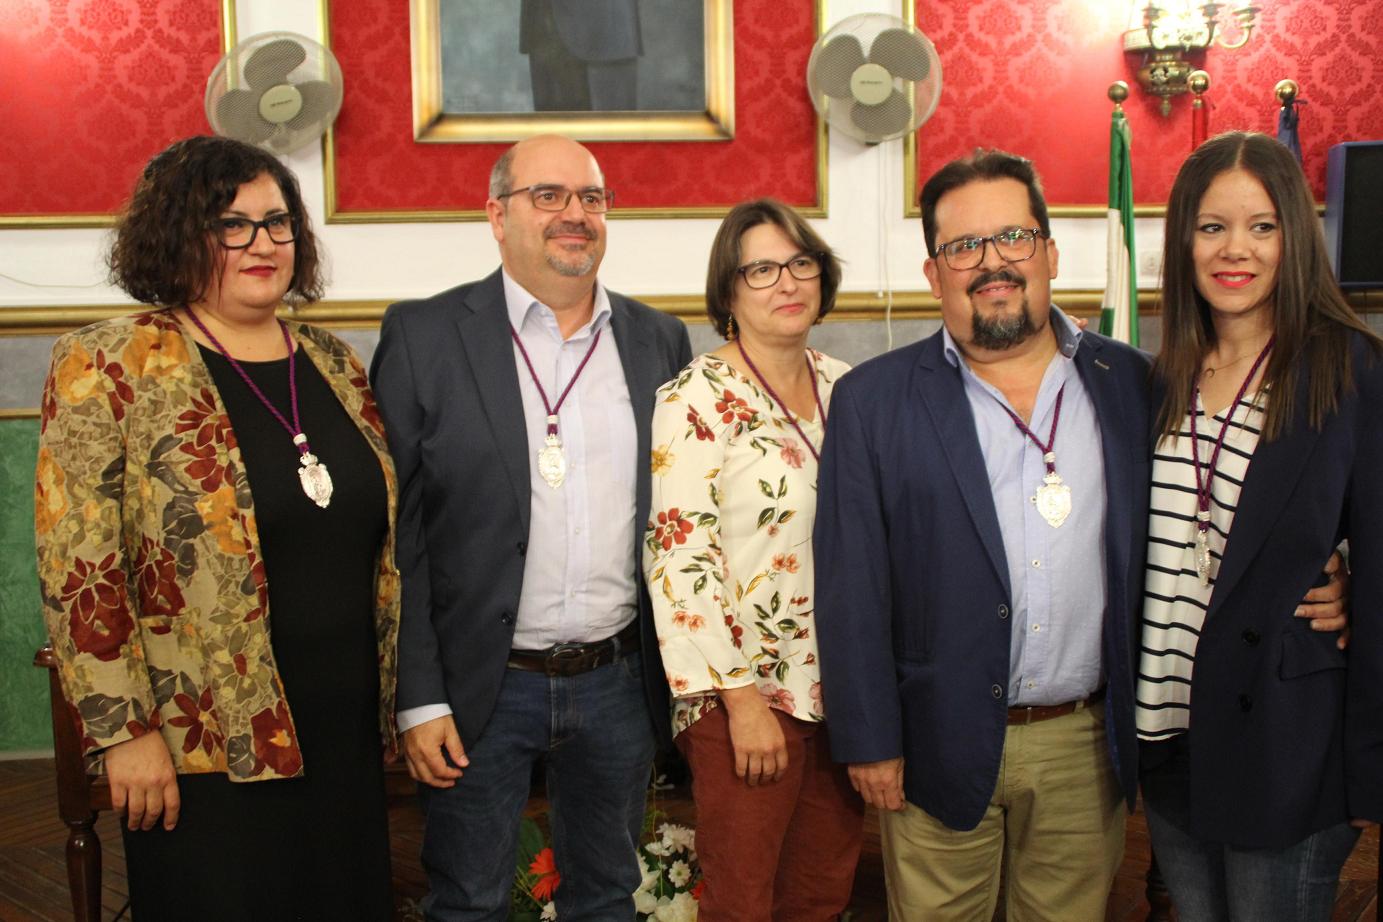 Grupo municipal AMA Morón 2019-2023